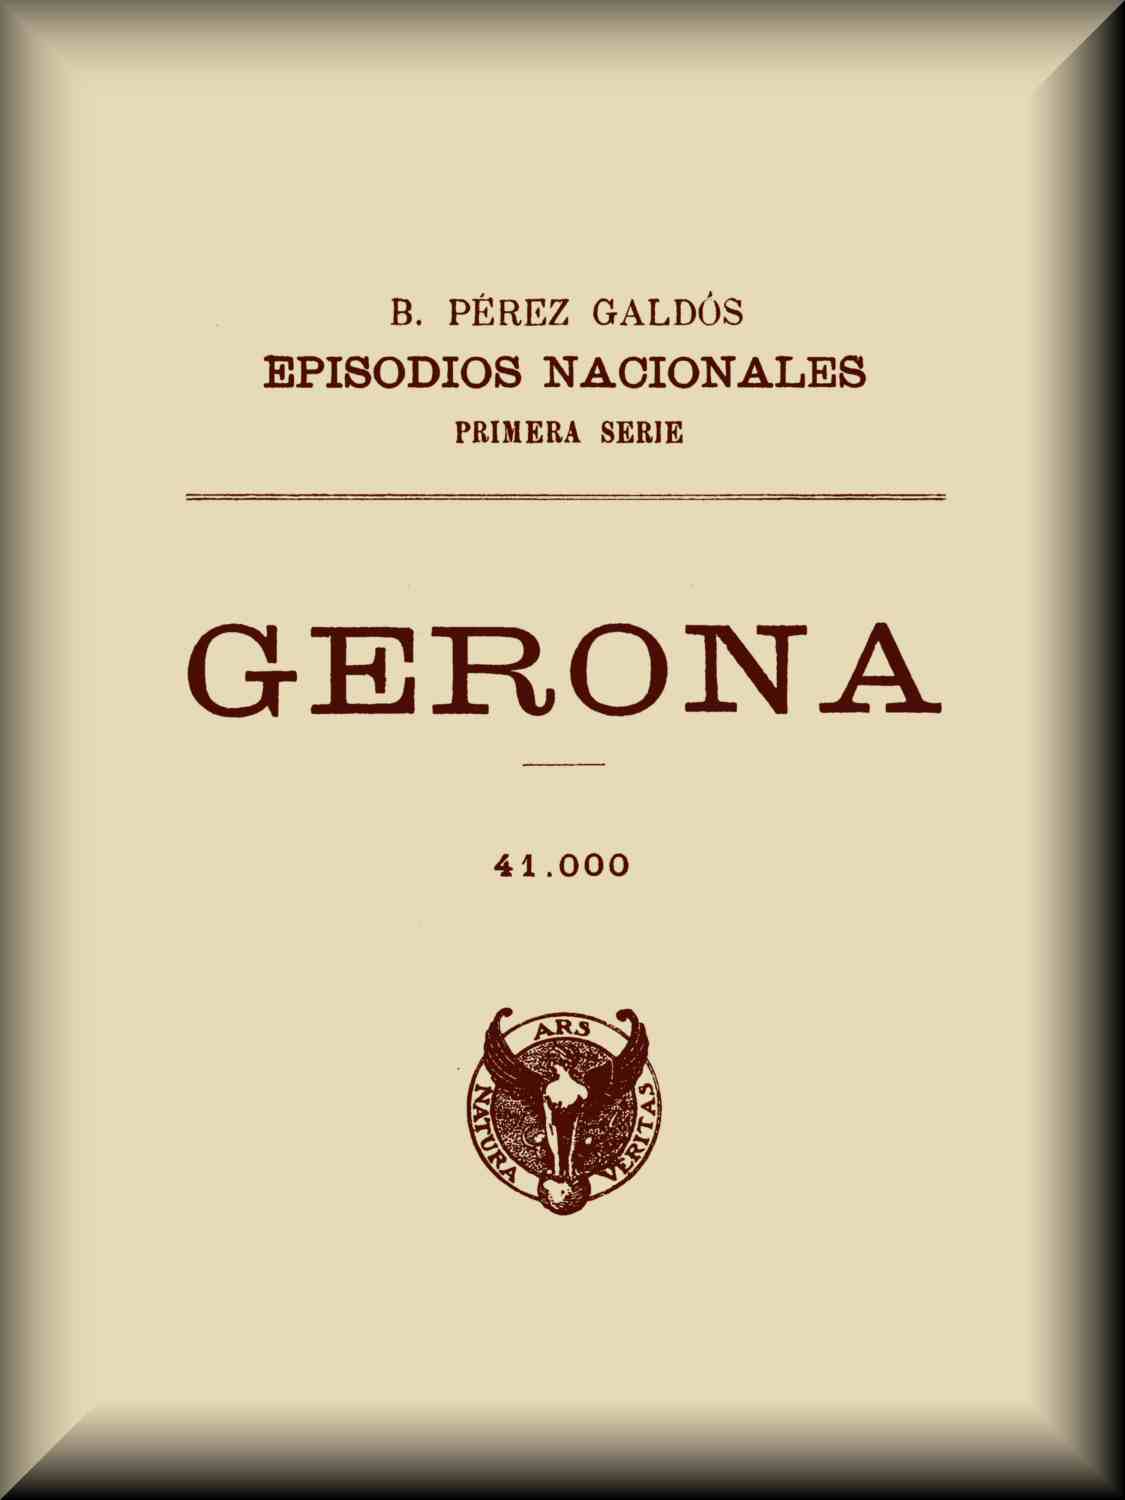 Gerona, by Benito Pérez Galdós—A Project Gutenberg eBook